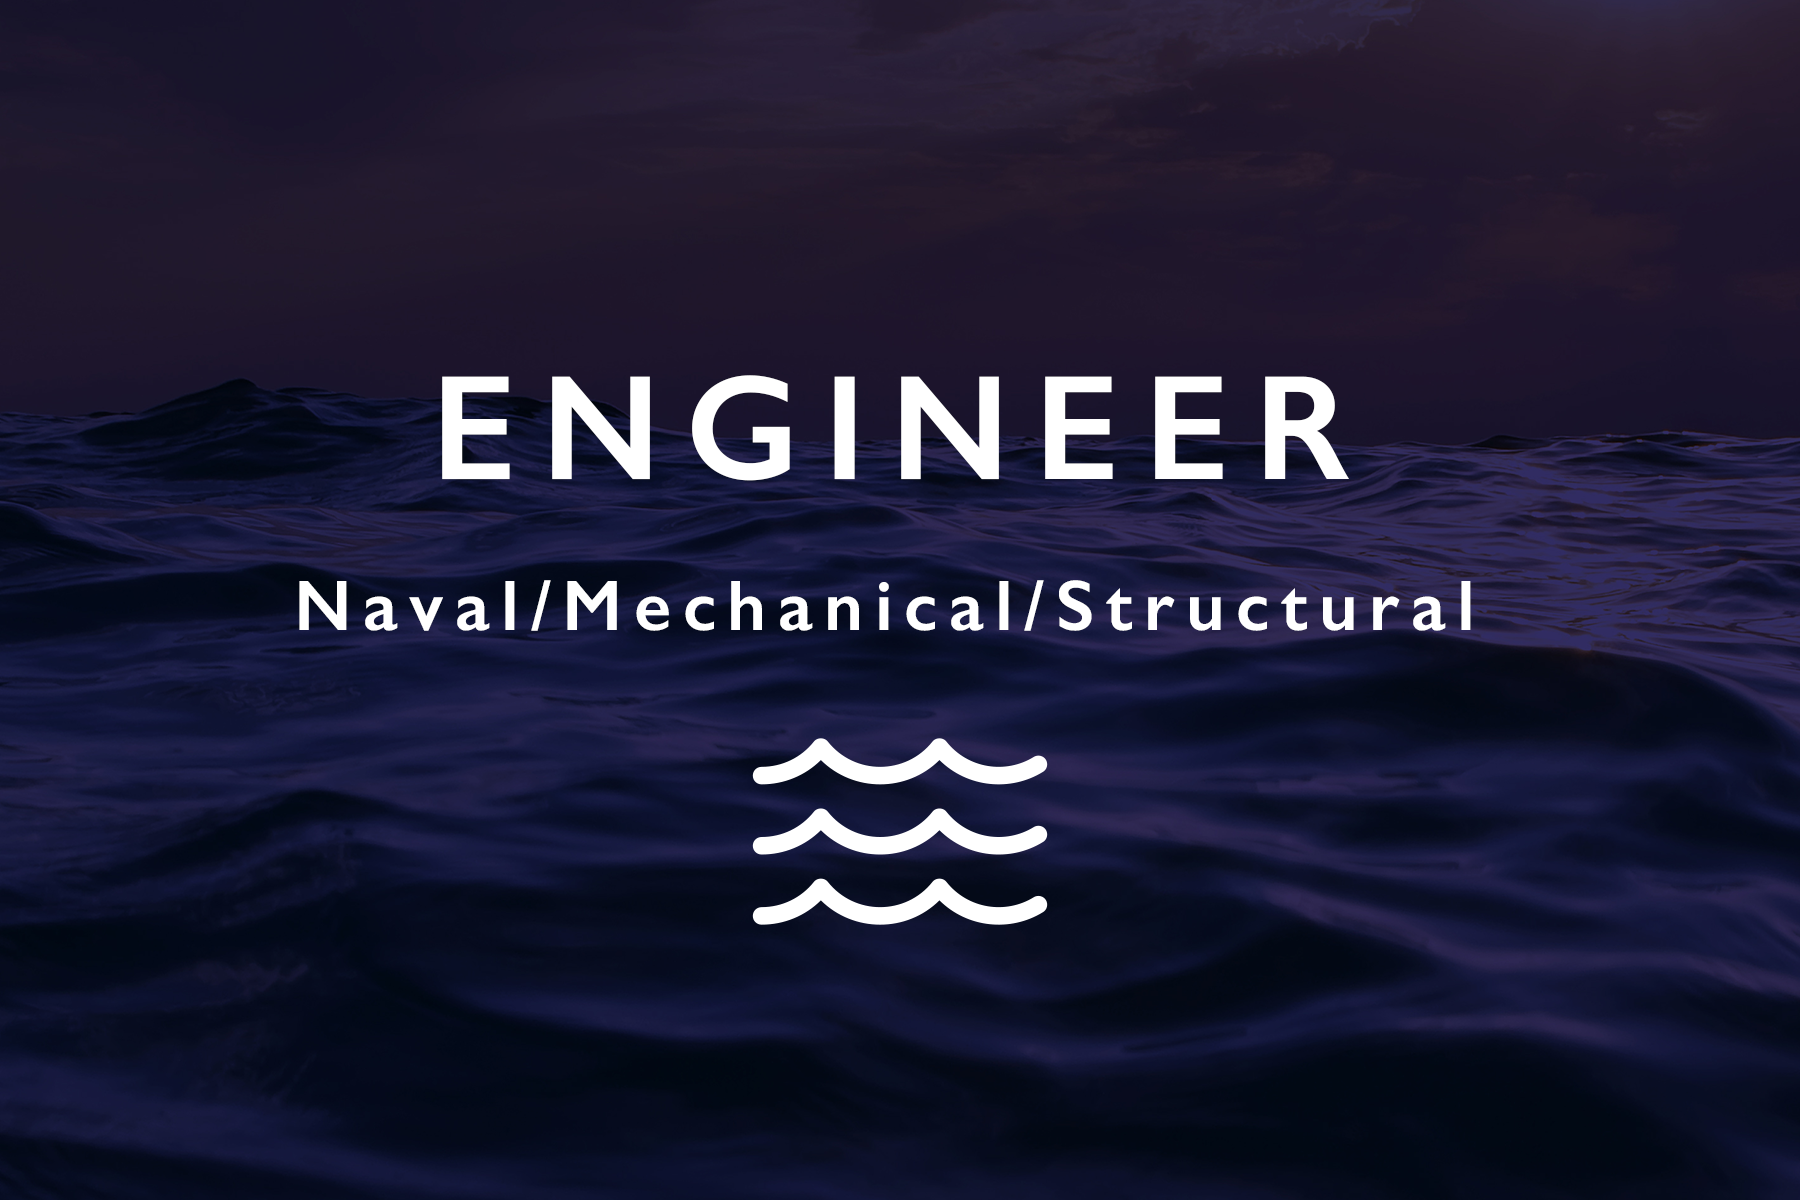 Engineer - Voe Marine Careers